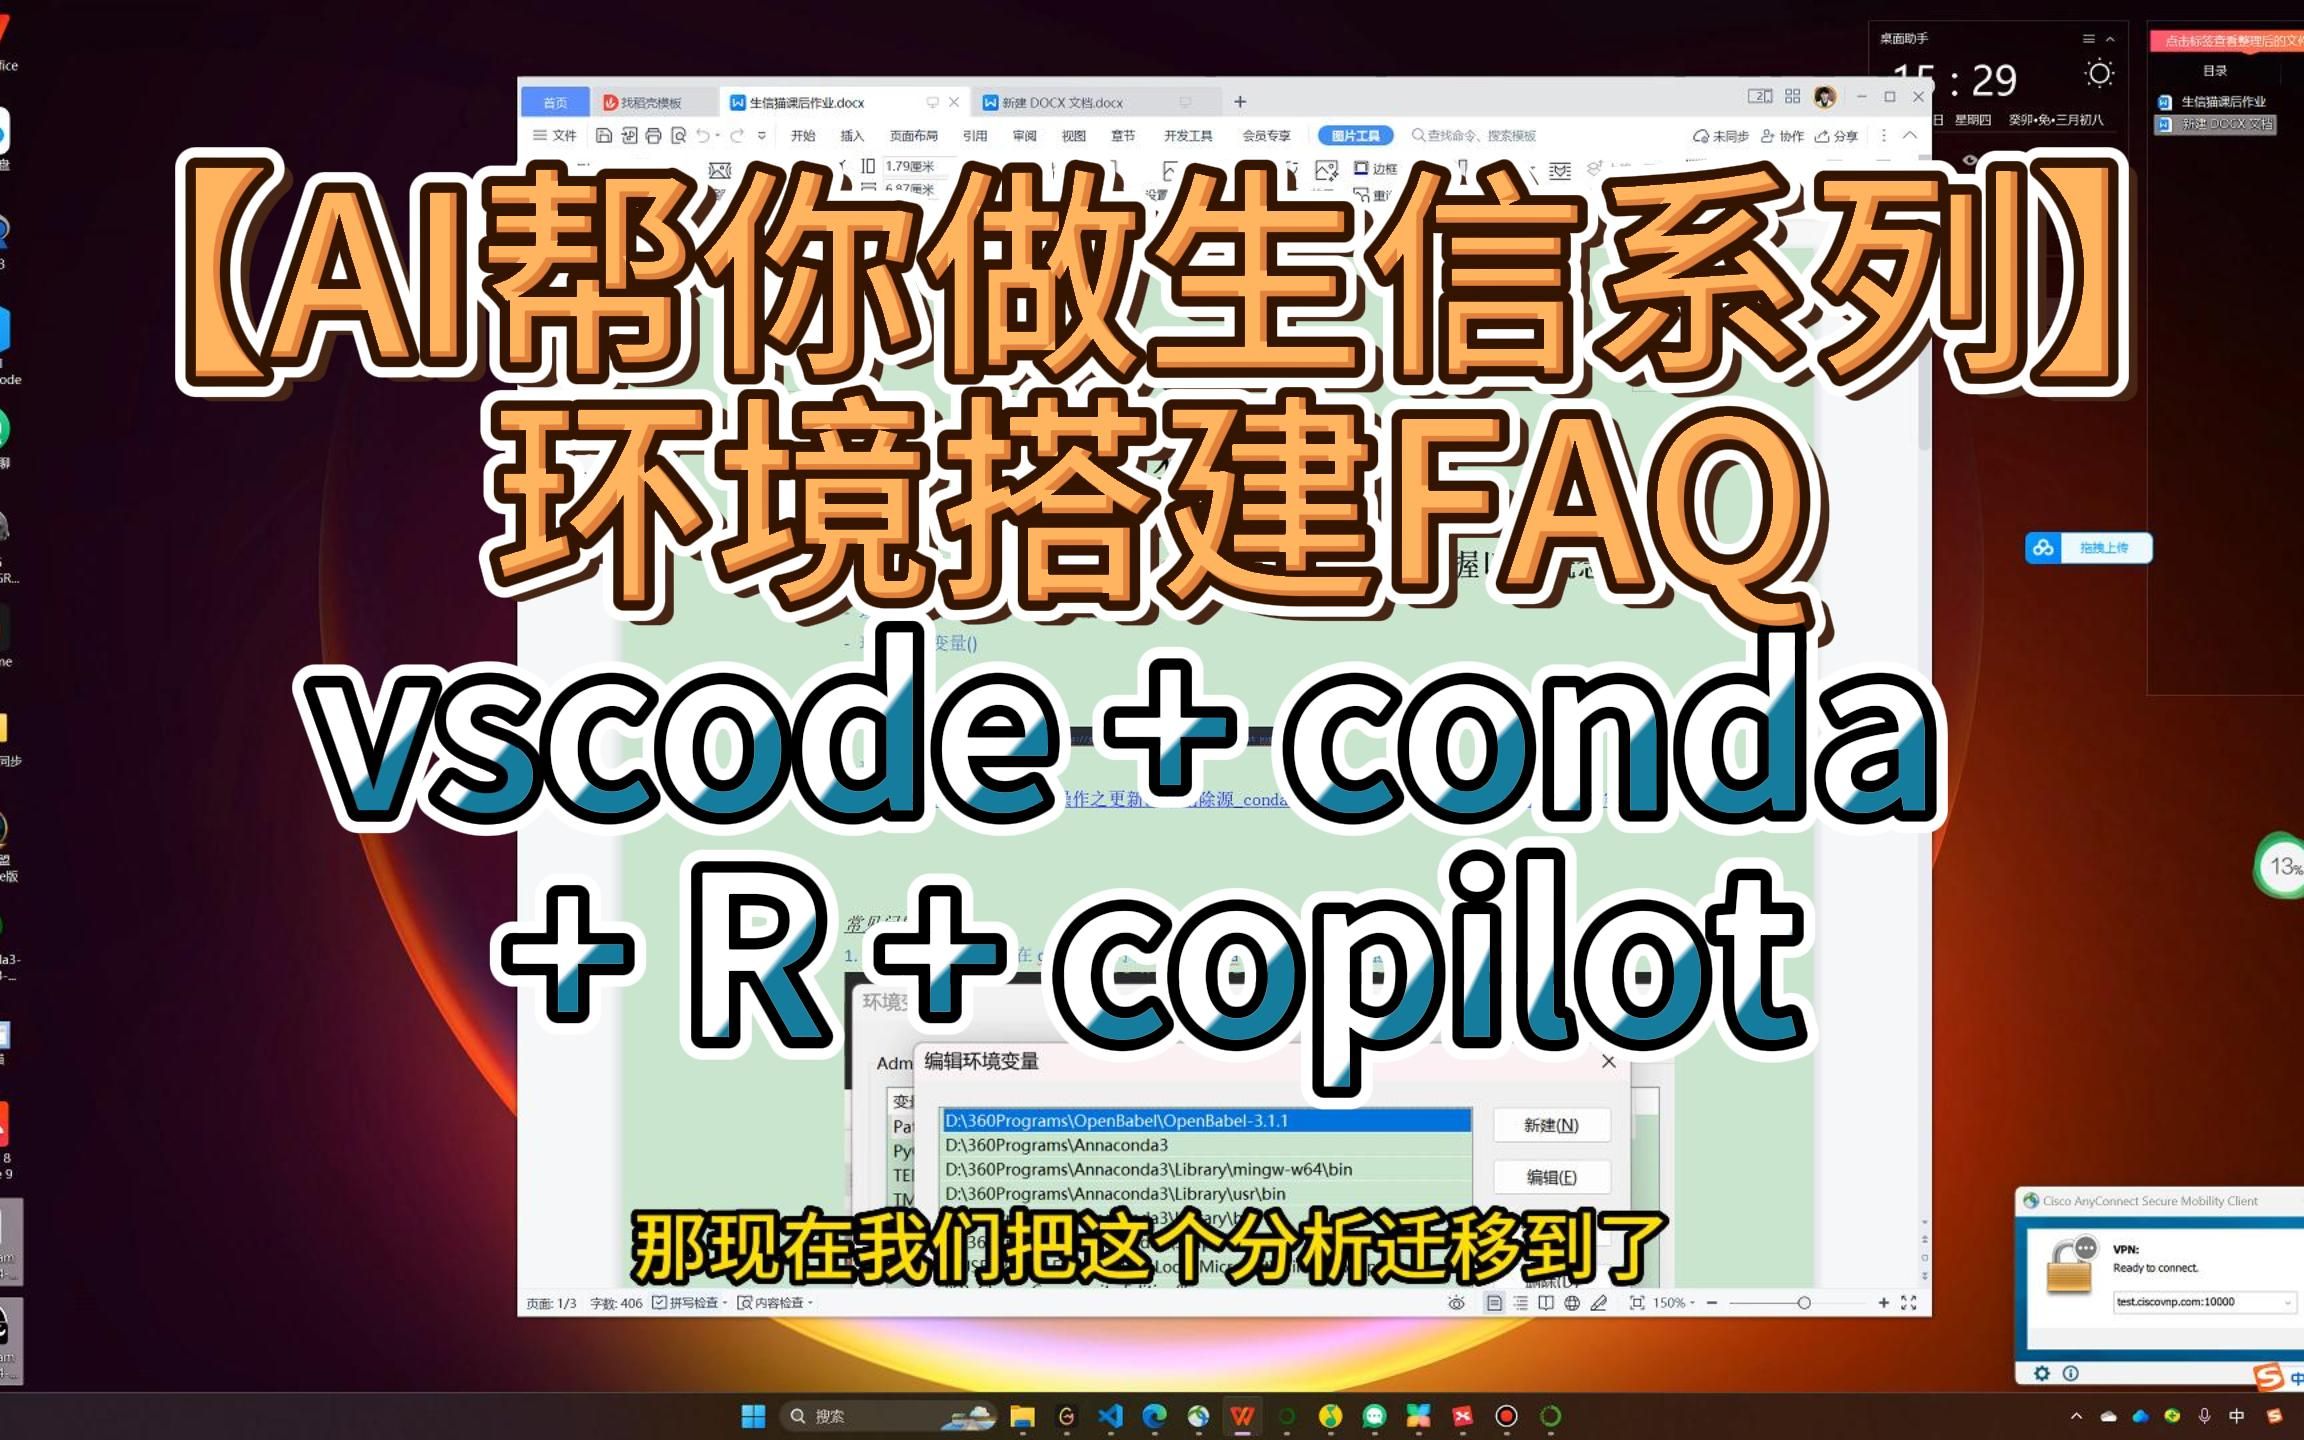 配置vscode + conda +R时常遇到的问题【AI帮你做生信EP01】  | GEO | TCGA | 生信 | 机器学习 | 医学生 | 医生